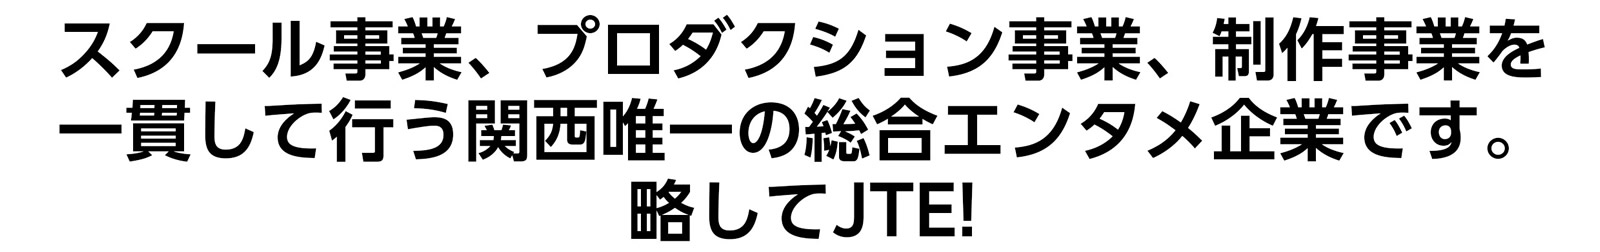 スクール事業、プロダクション事業、制作事業を一貫して行う関西唯一の総合エンタメ企業です。略してJTE!